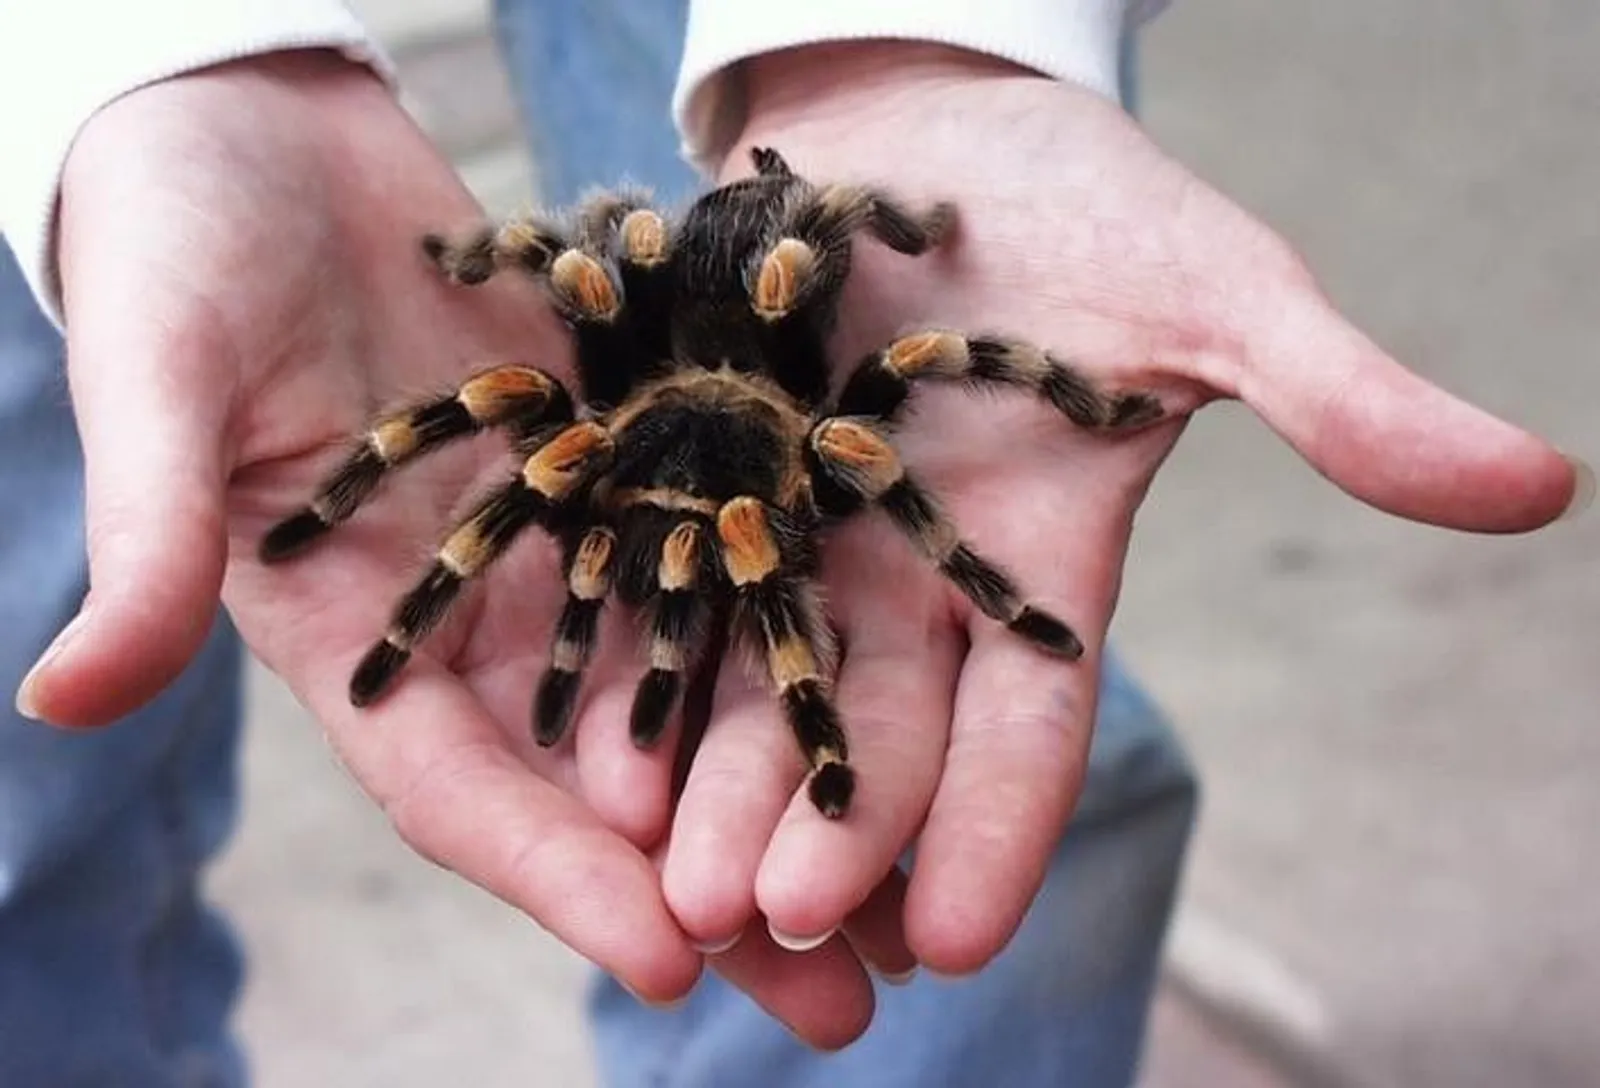 Kalau Merinding Lihat 15 Gambar Ini, Mungkin Kamu Idap Arachnophobia